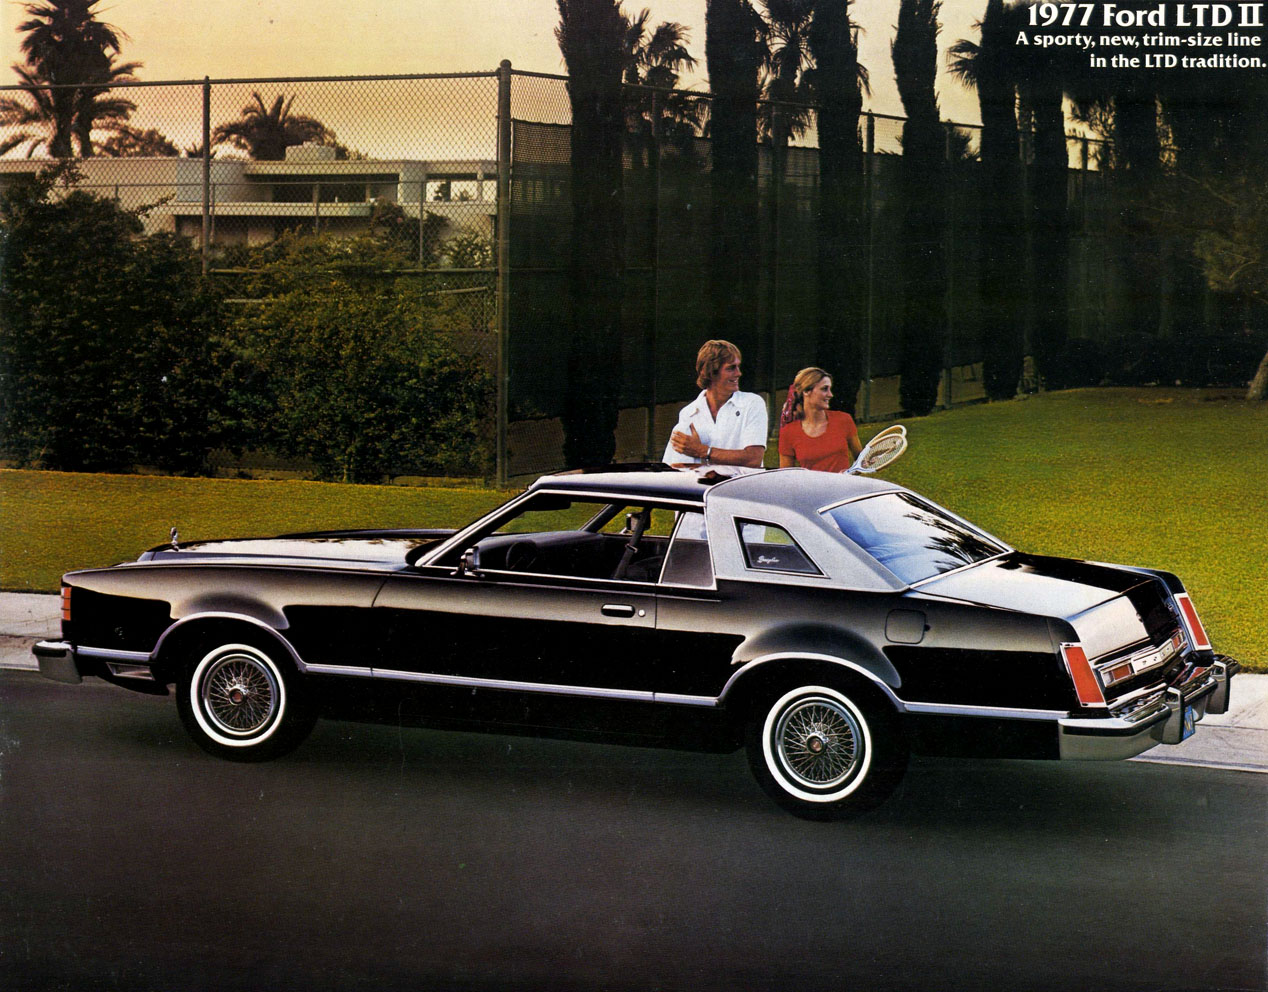 1977 Ford LTD II-01